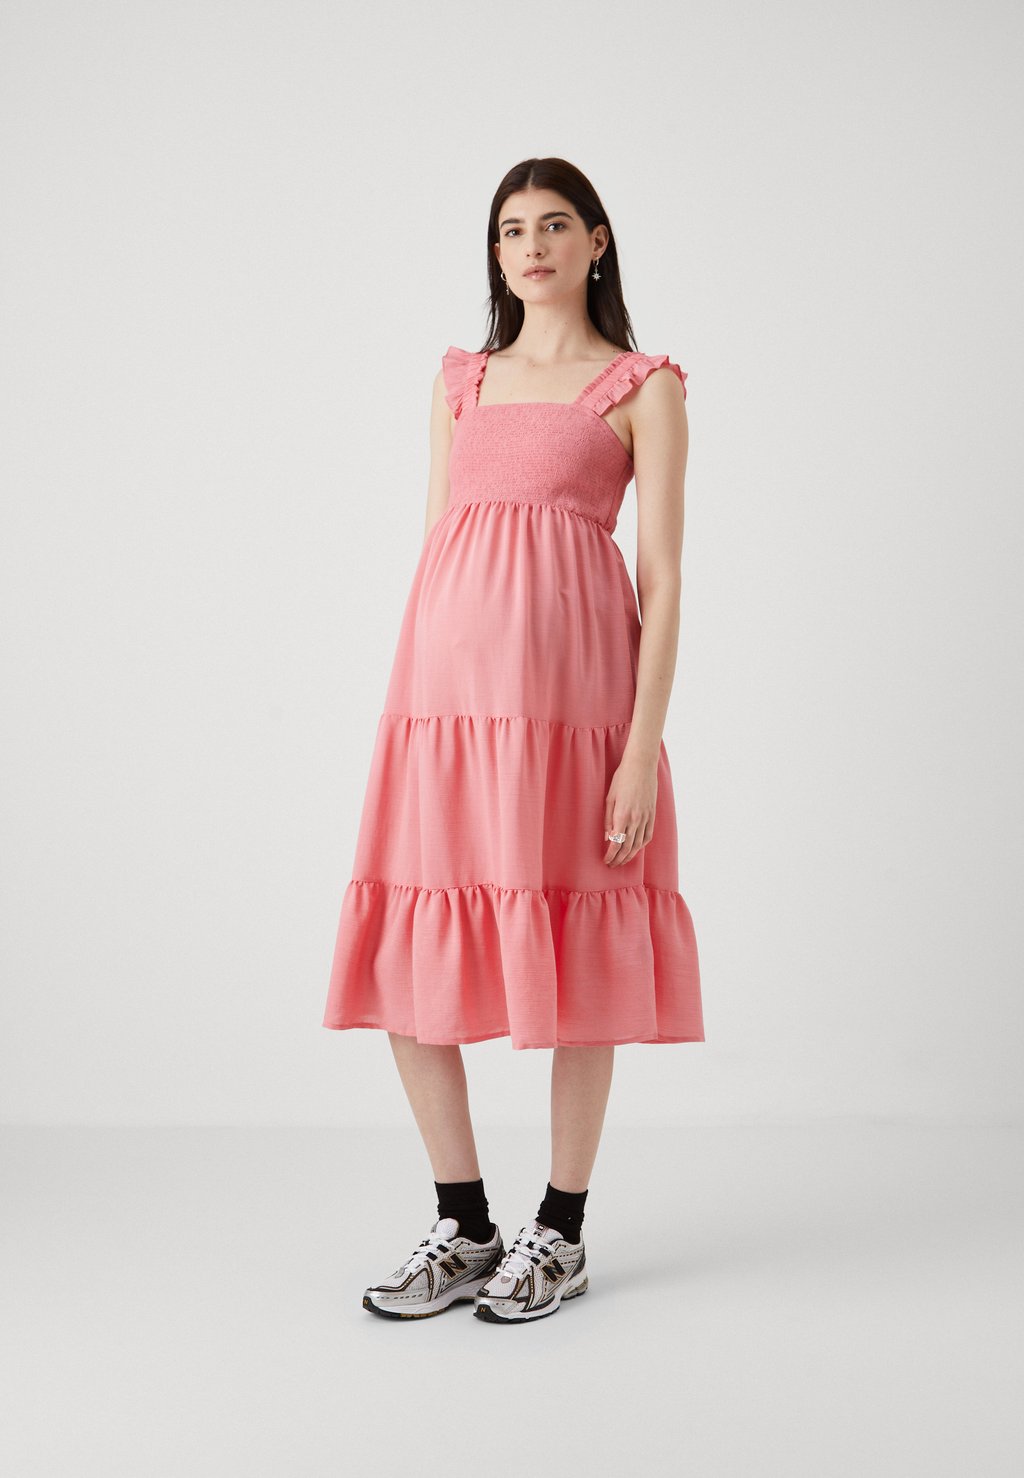 Дневное платье OLMGRACE FRILL CALF DRESS ONLY MATERNITY, розовый